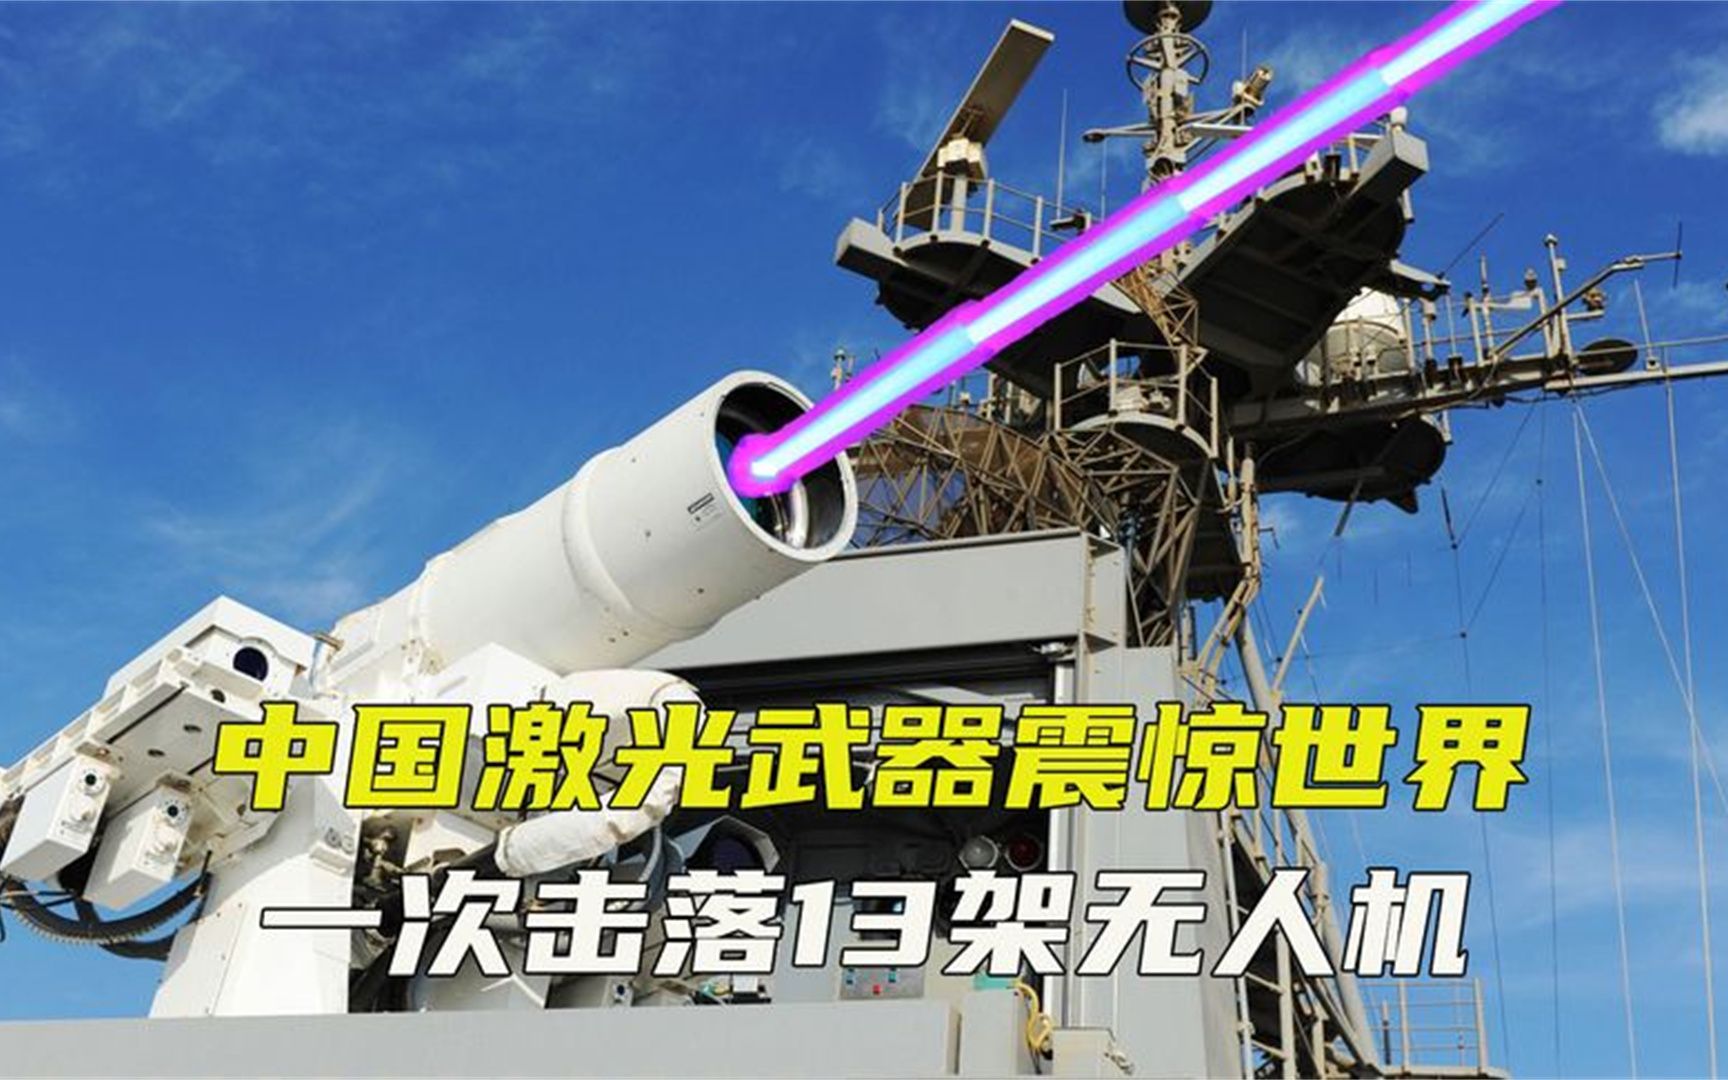 中国激光武器震惊世界,一次击落13架无人机,技术领先老美10年